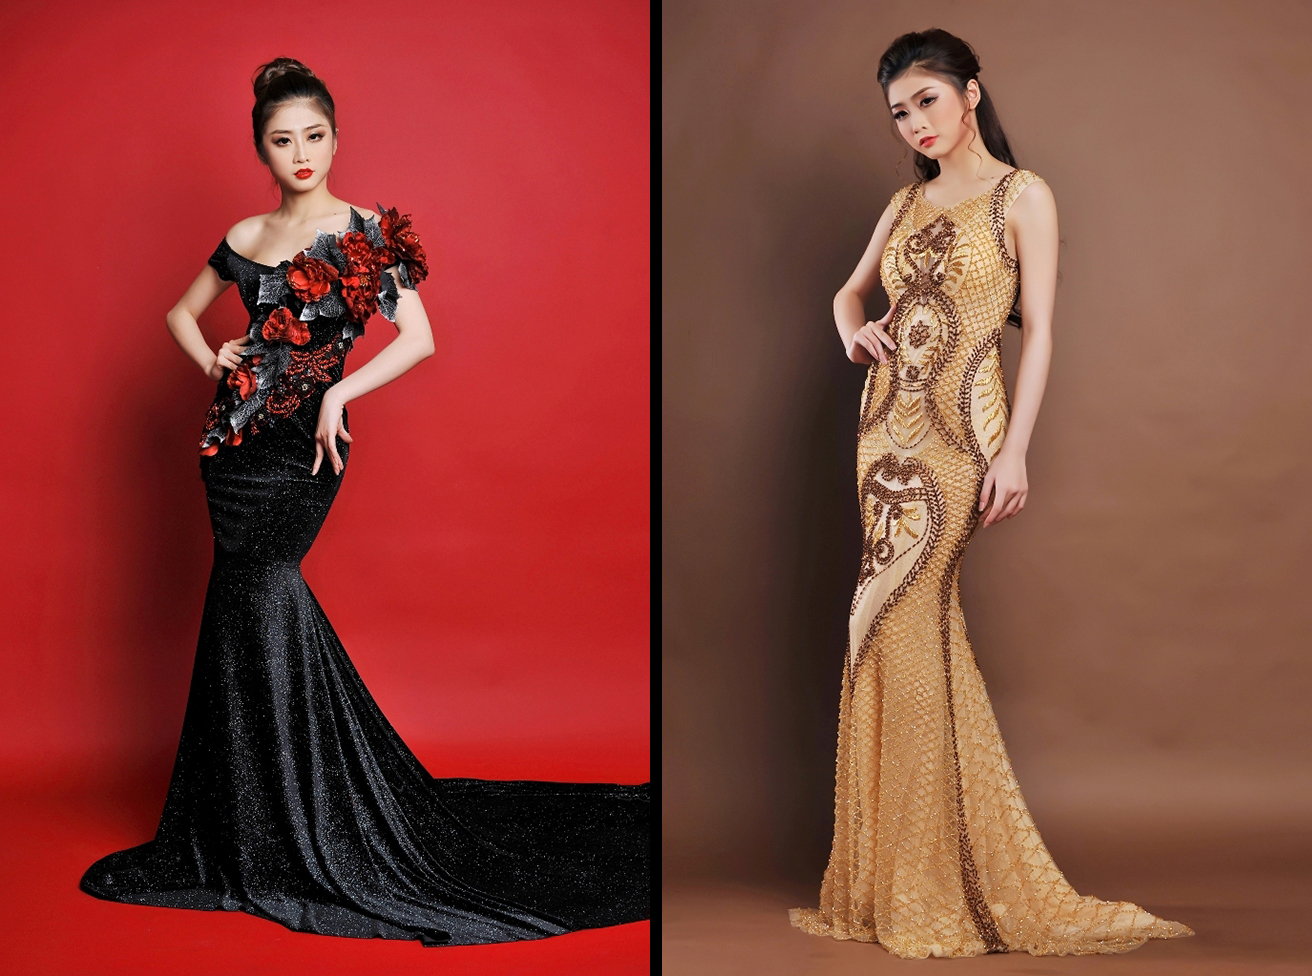 Á khôi Trương Thái Thùy Dương khoe đồ dạ hội dự thi Hoa hậu Bản sắc toàn cầu 2017